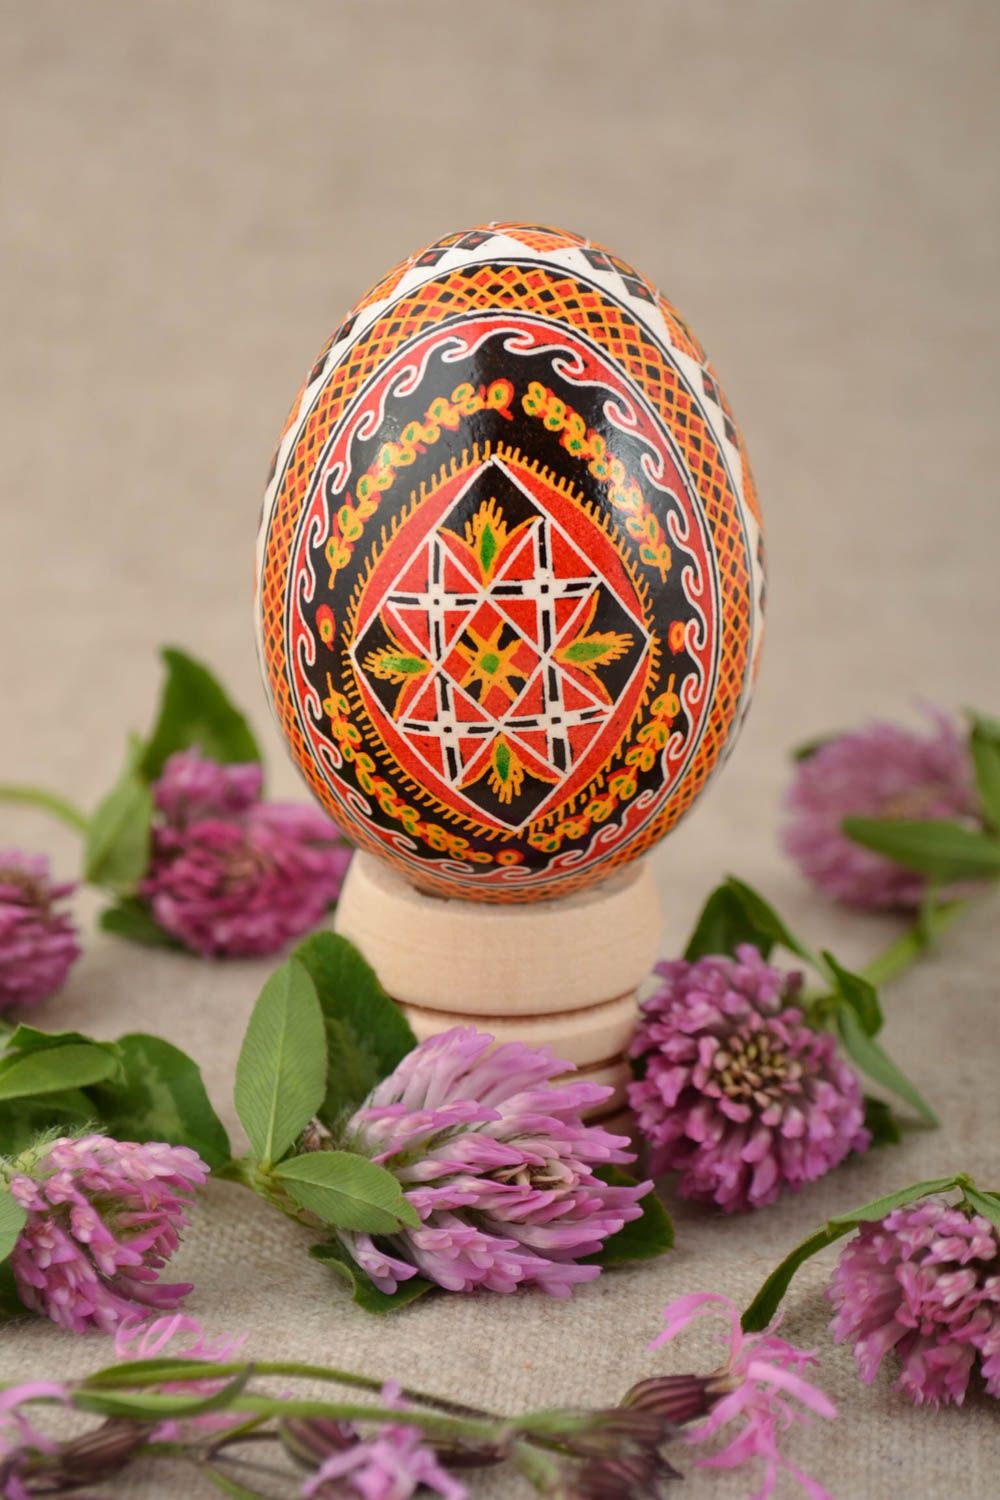 Яйцо декоративное на Пасху расписное подарок цветное красивое ручная работа  фото 1